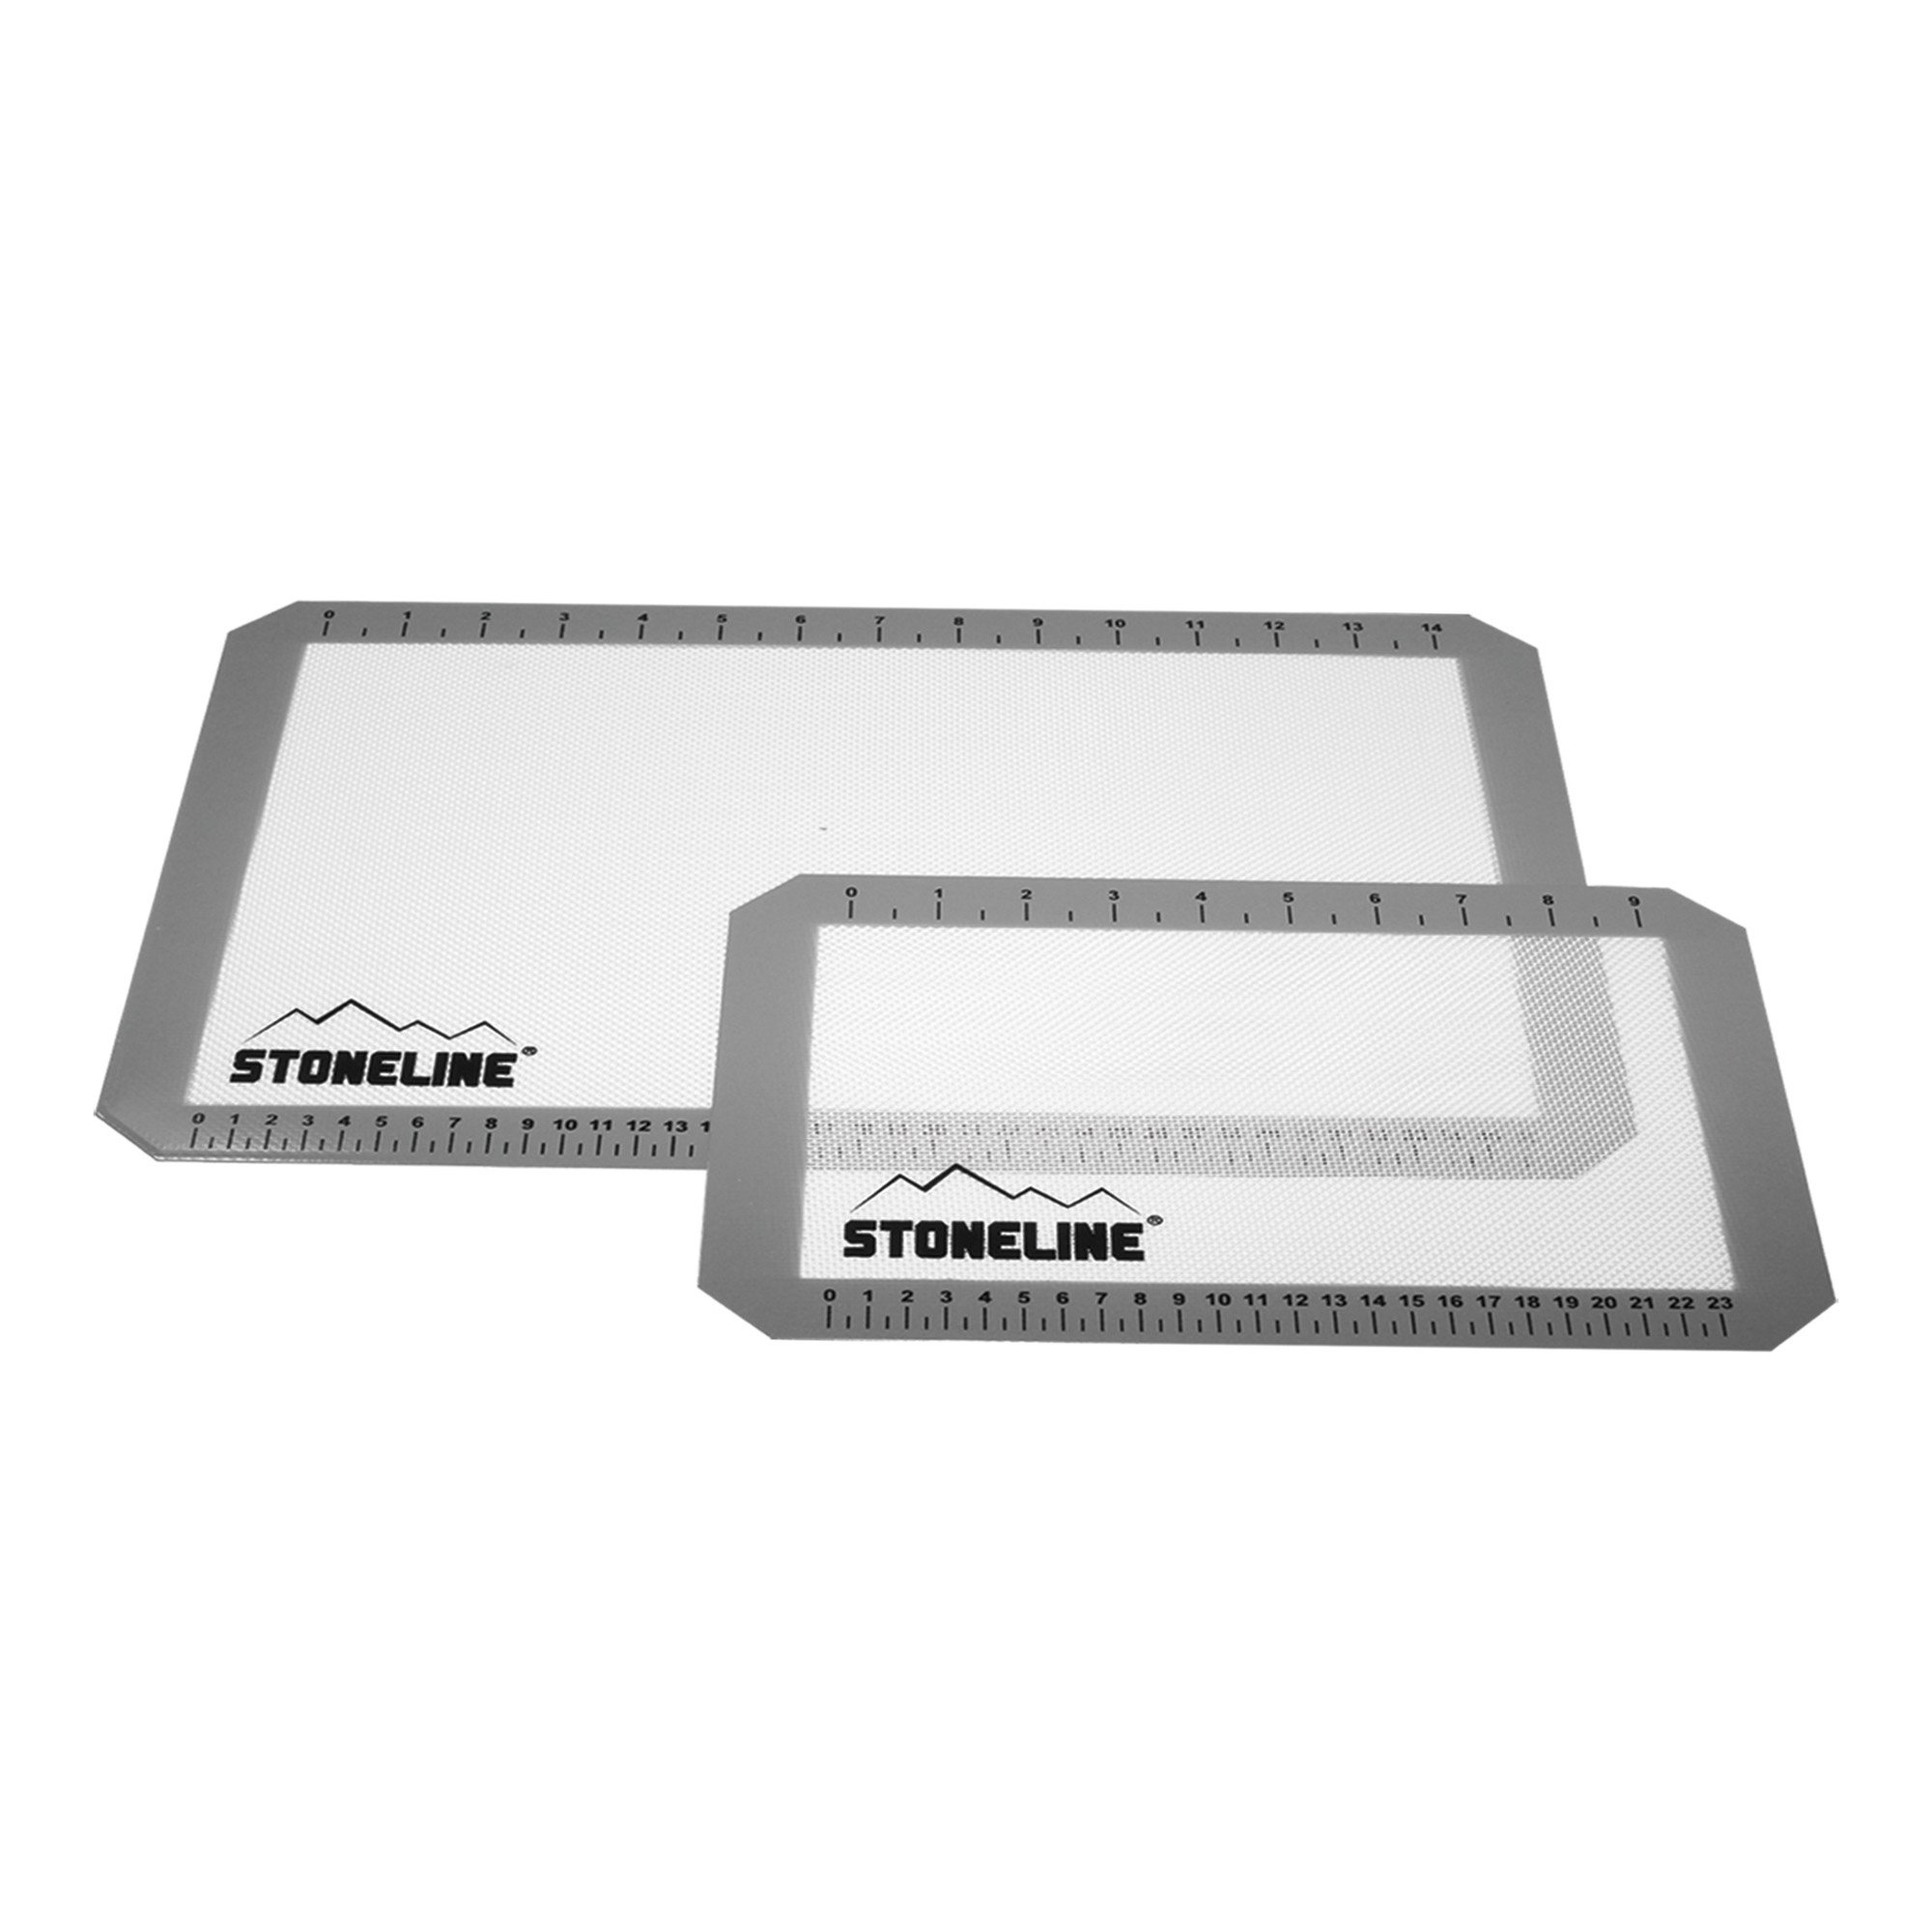 STONELINE® Silicone baking mat set, 2 pcs.